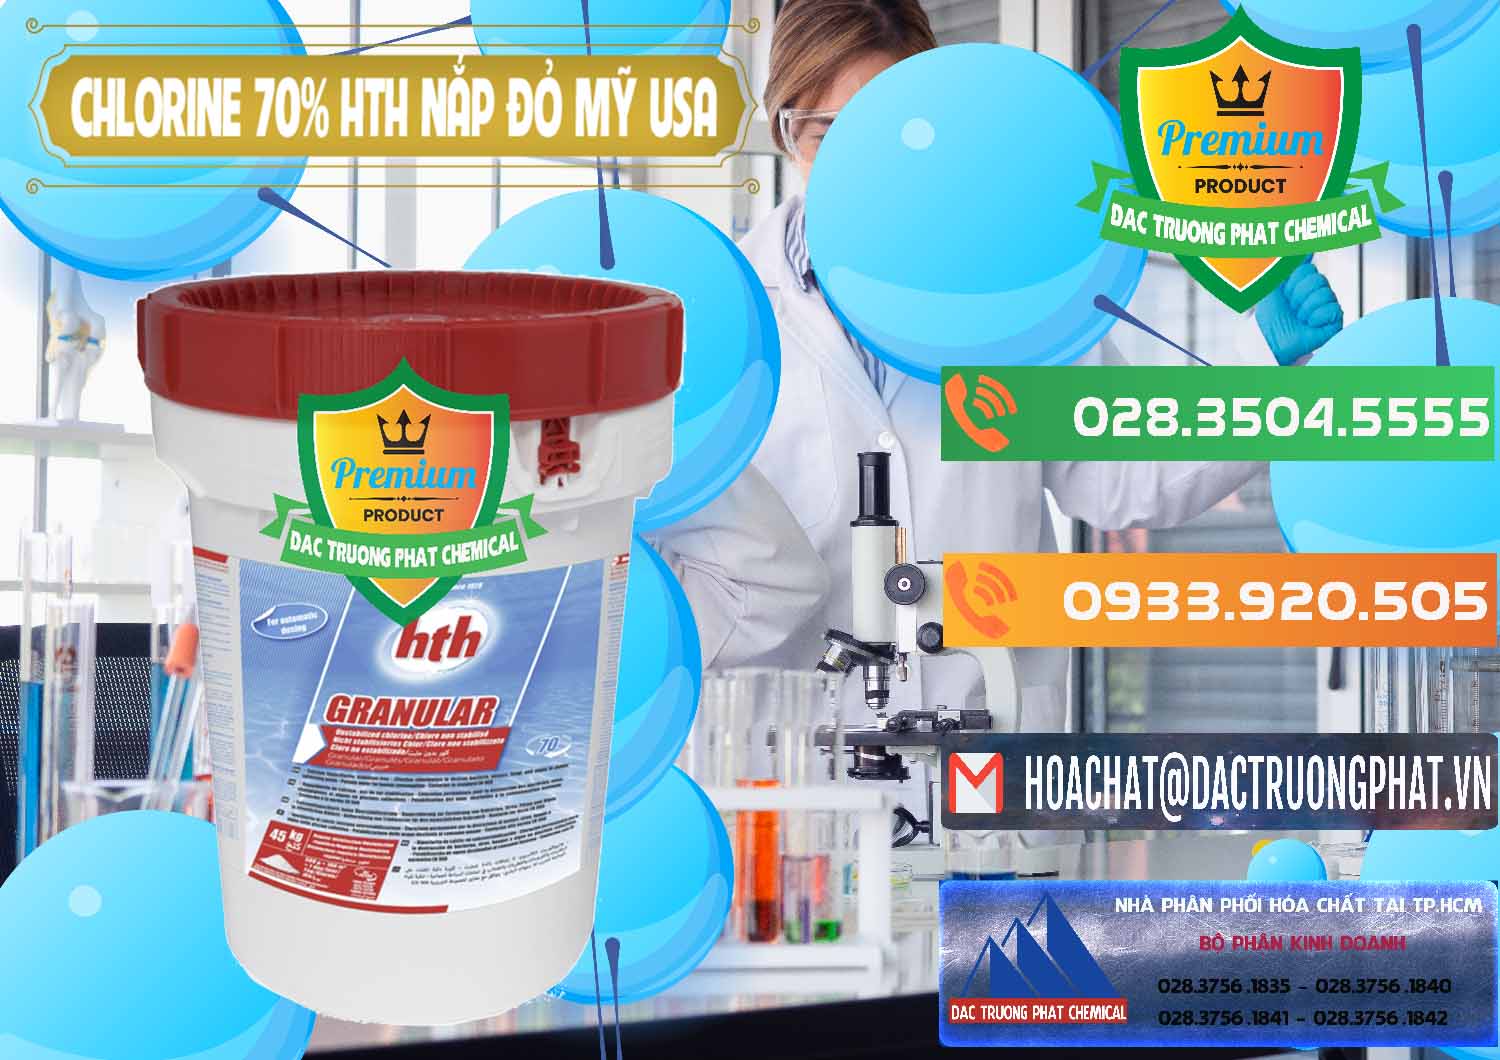 Chuyên kinh doanh _ bán Clorin – Chlorine 70% HTH Nắp Đỏ Mỹ Usa - 0244 - Cty chuyên bán _ cung cấp hóa chất tại TP.HCM - hoachatxulynuoc.com.vn